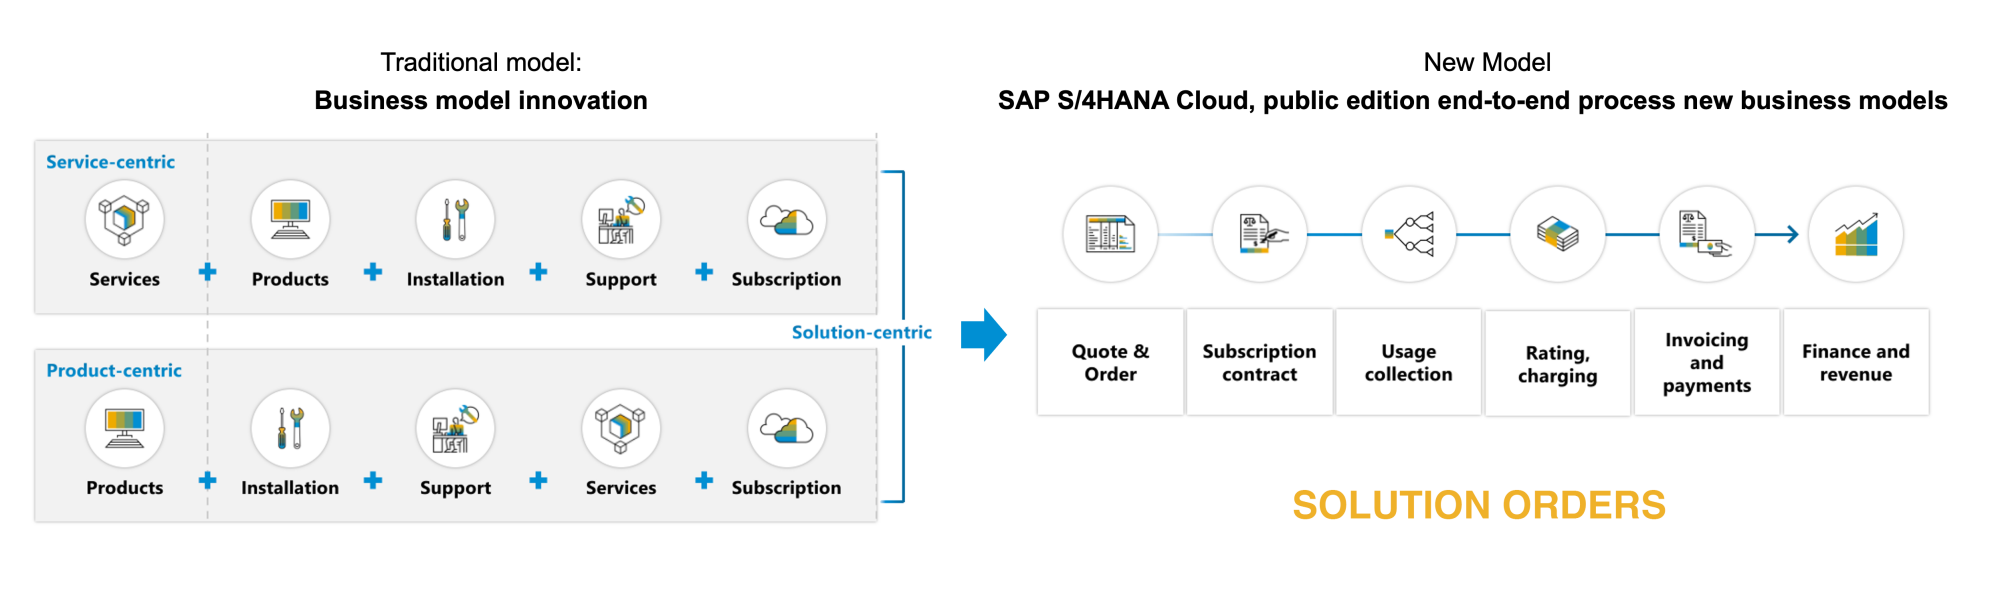 SAP S/4HANA Cloud, Public Edition Solution Order Concept